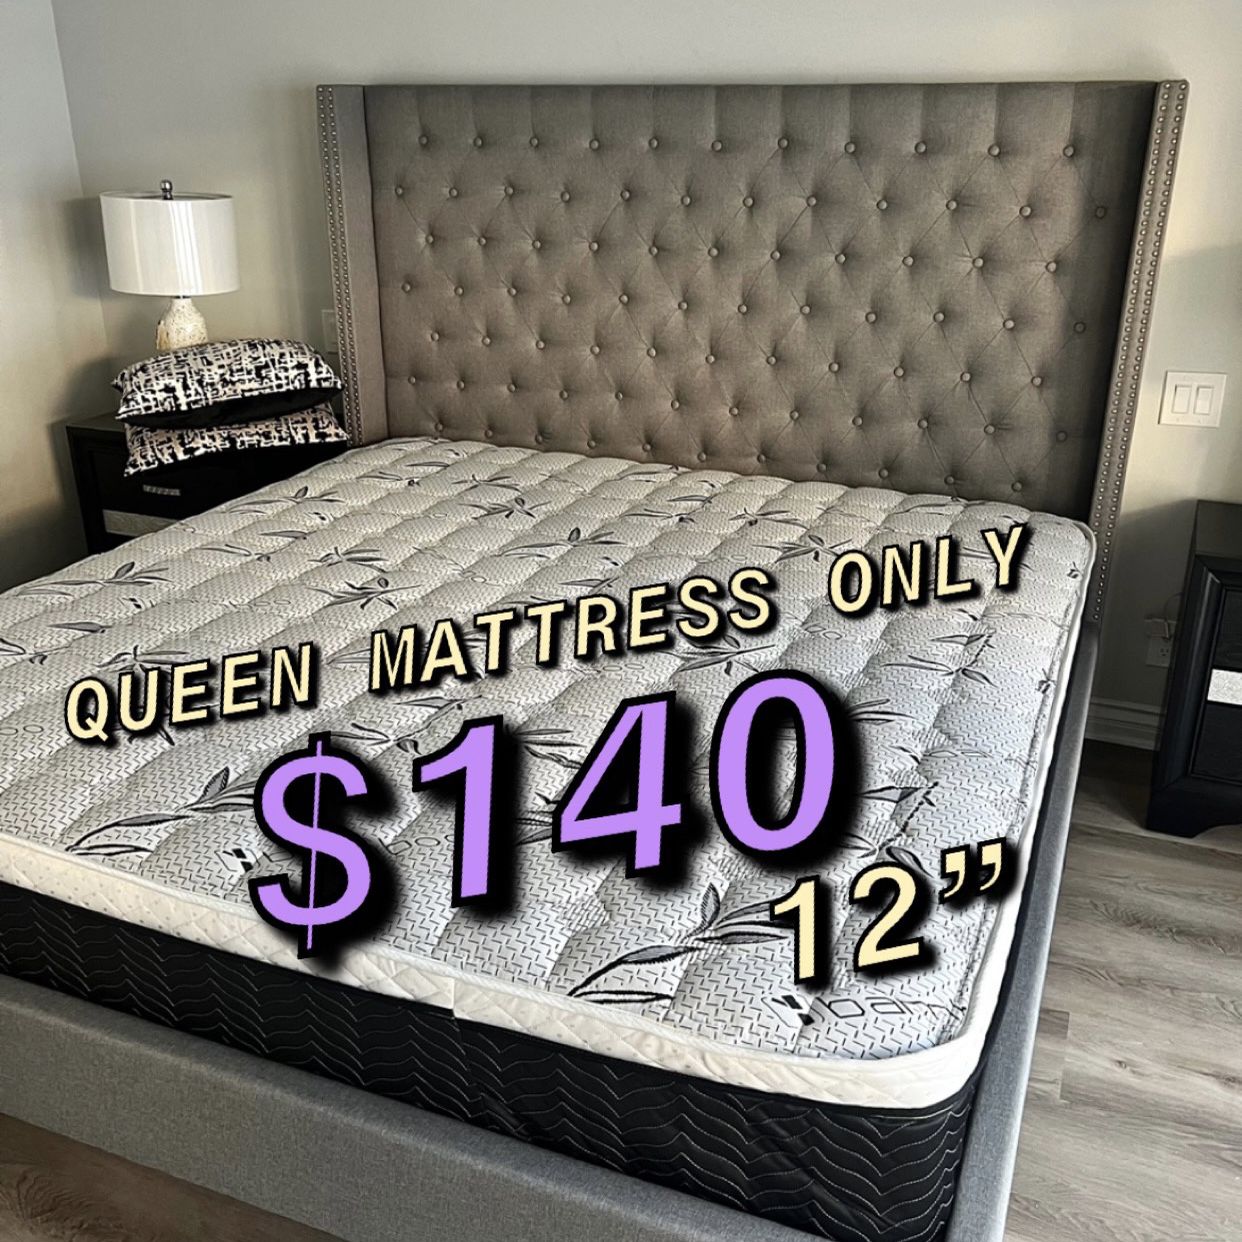 New Queen Mattress $140